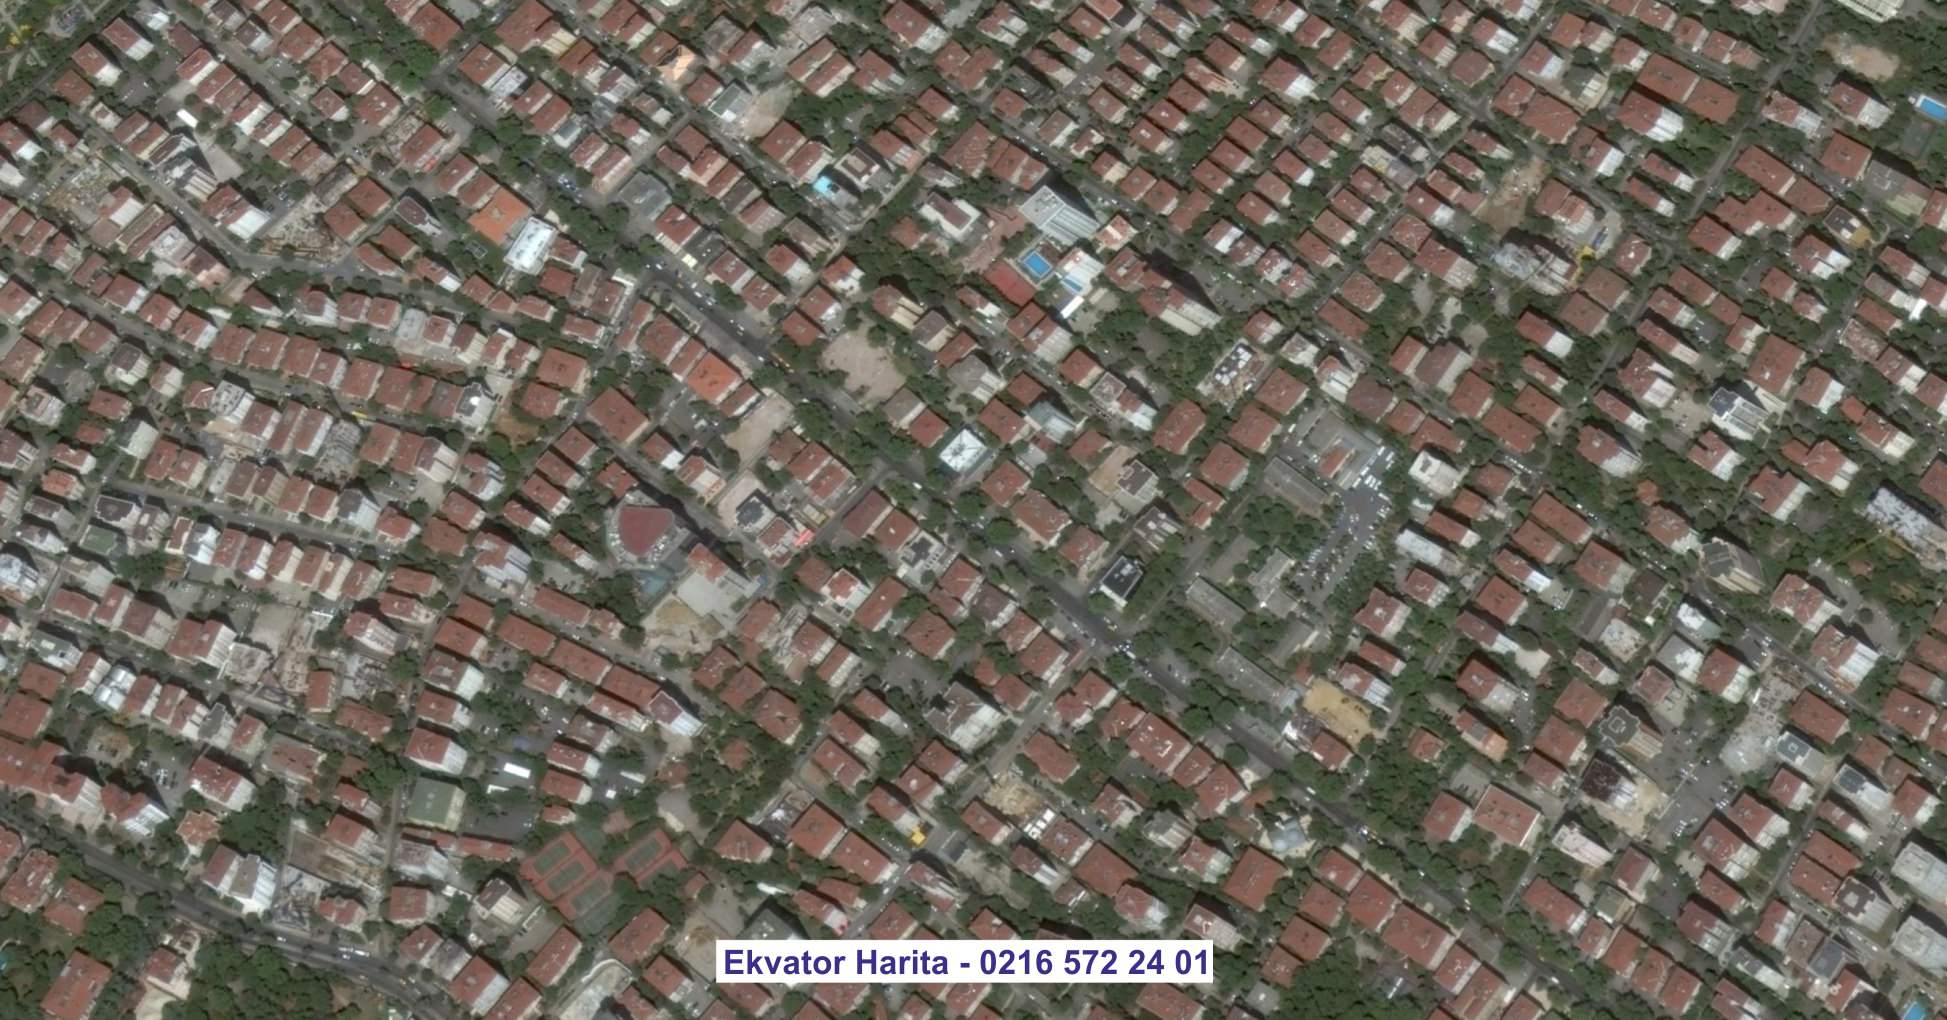 Menbiç Uydu Görüntüsü Örnek Fotoğrafı